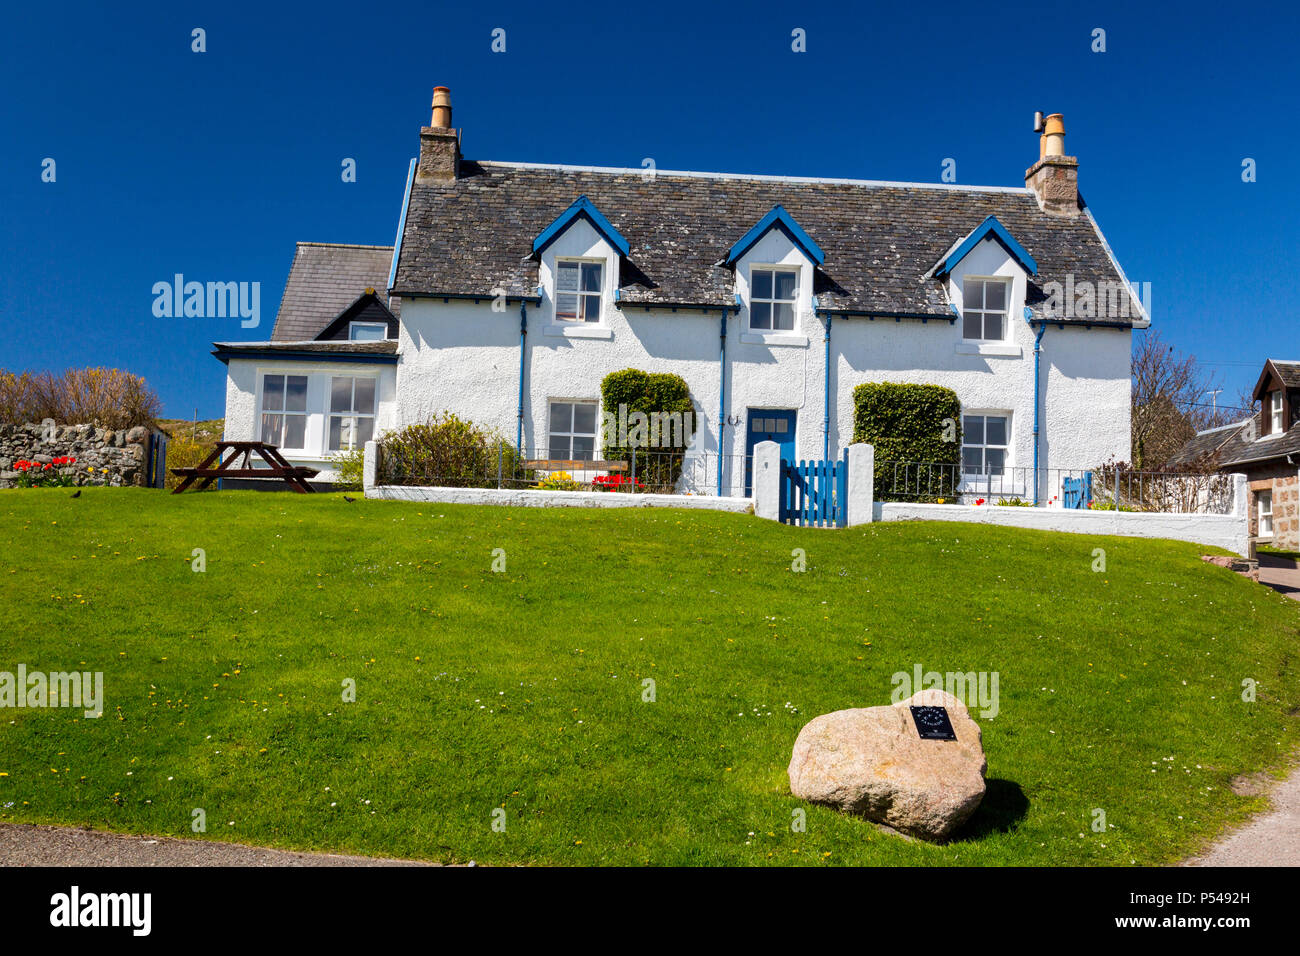 Un cottage coloré à Baile Mor, la plus grande colonie sur l'île d'Iona Hébrides, Argyll and Bute, Ecosse, Royaume-Uni Banque D'Images